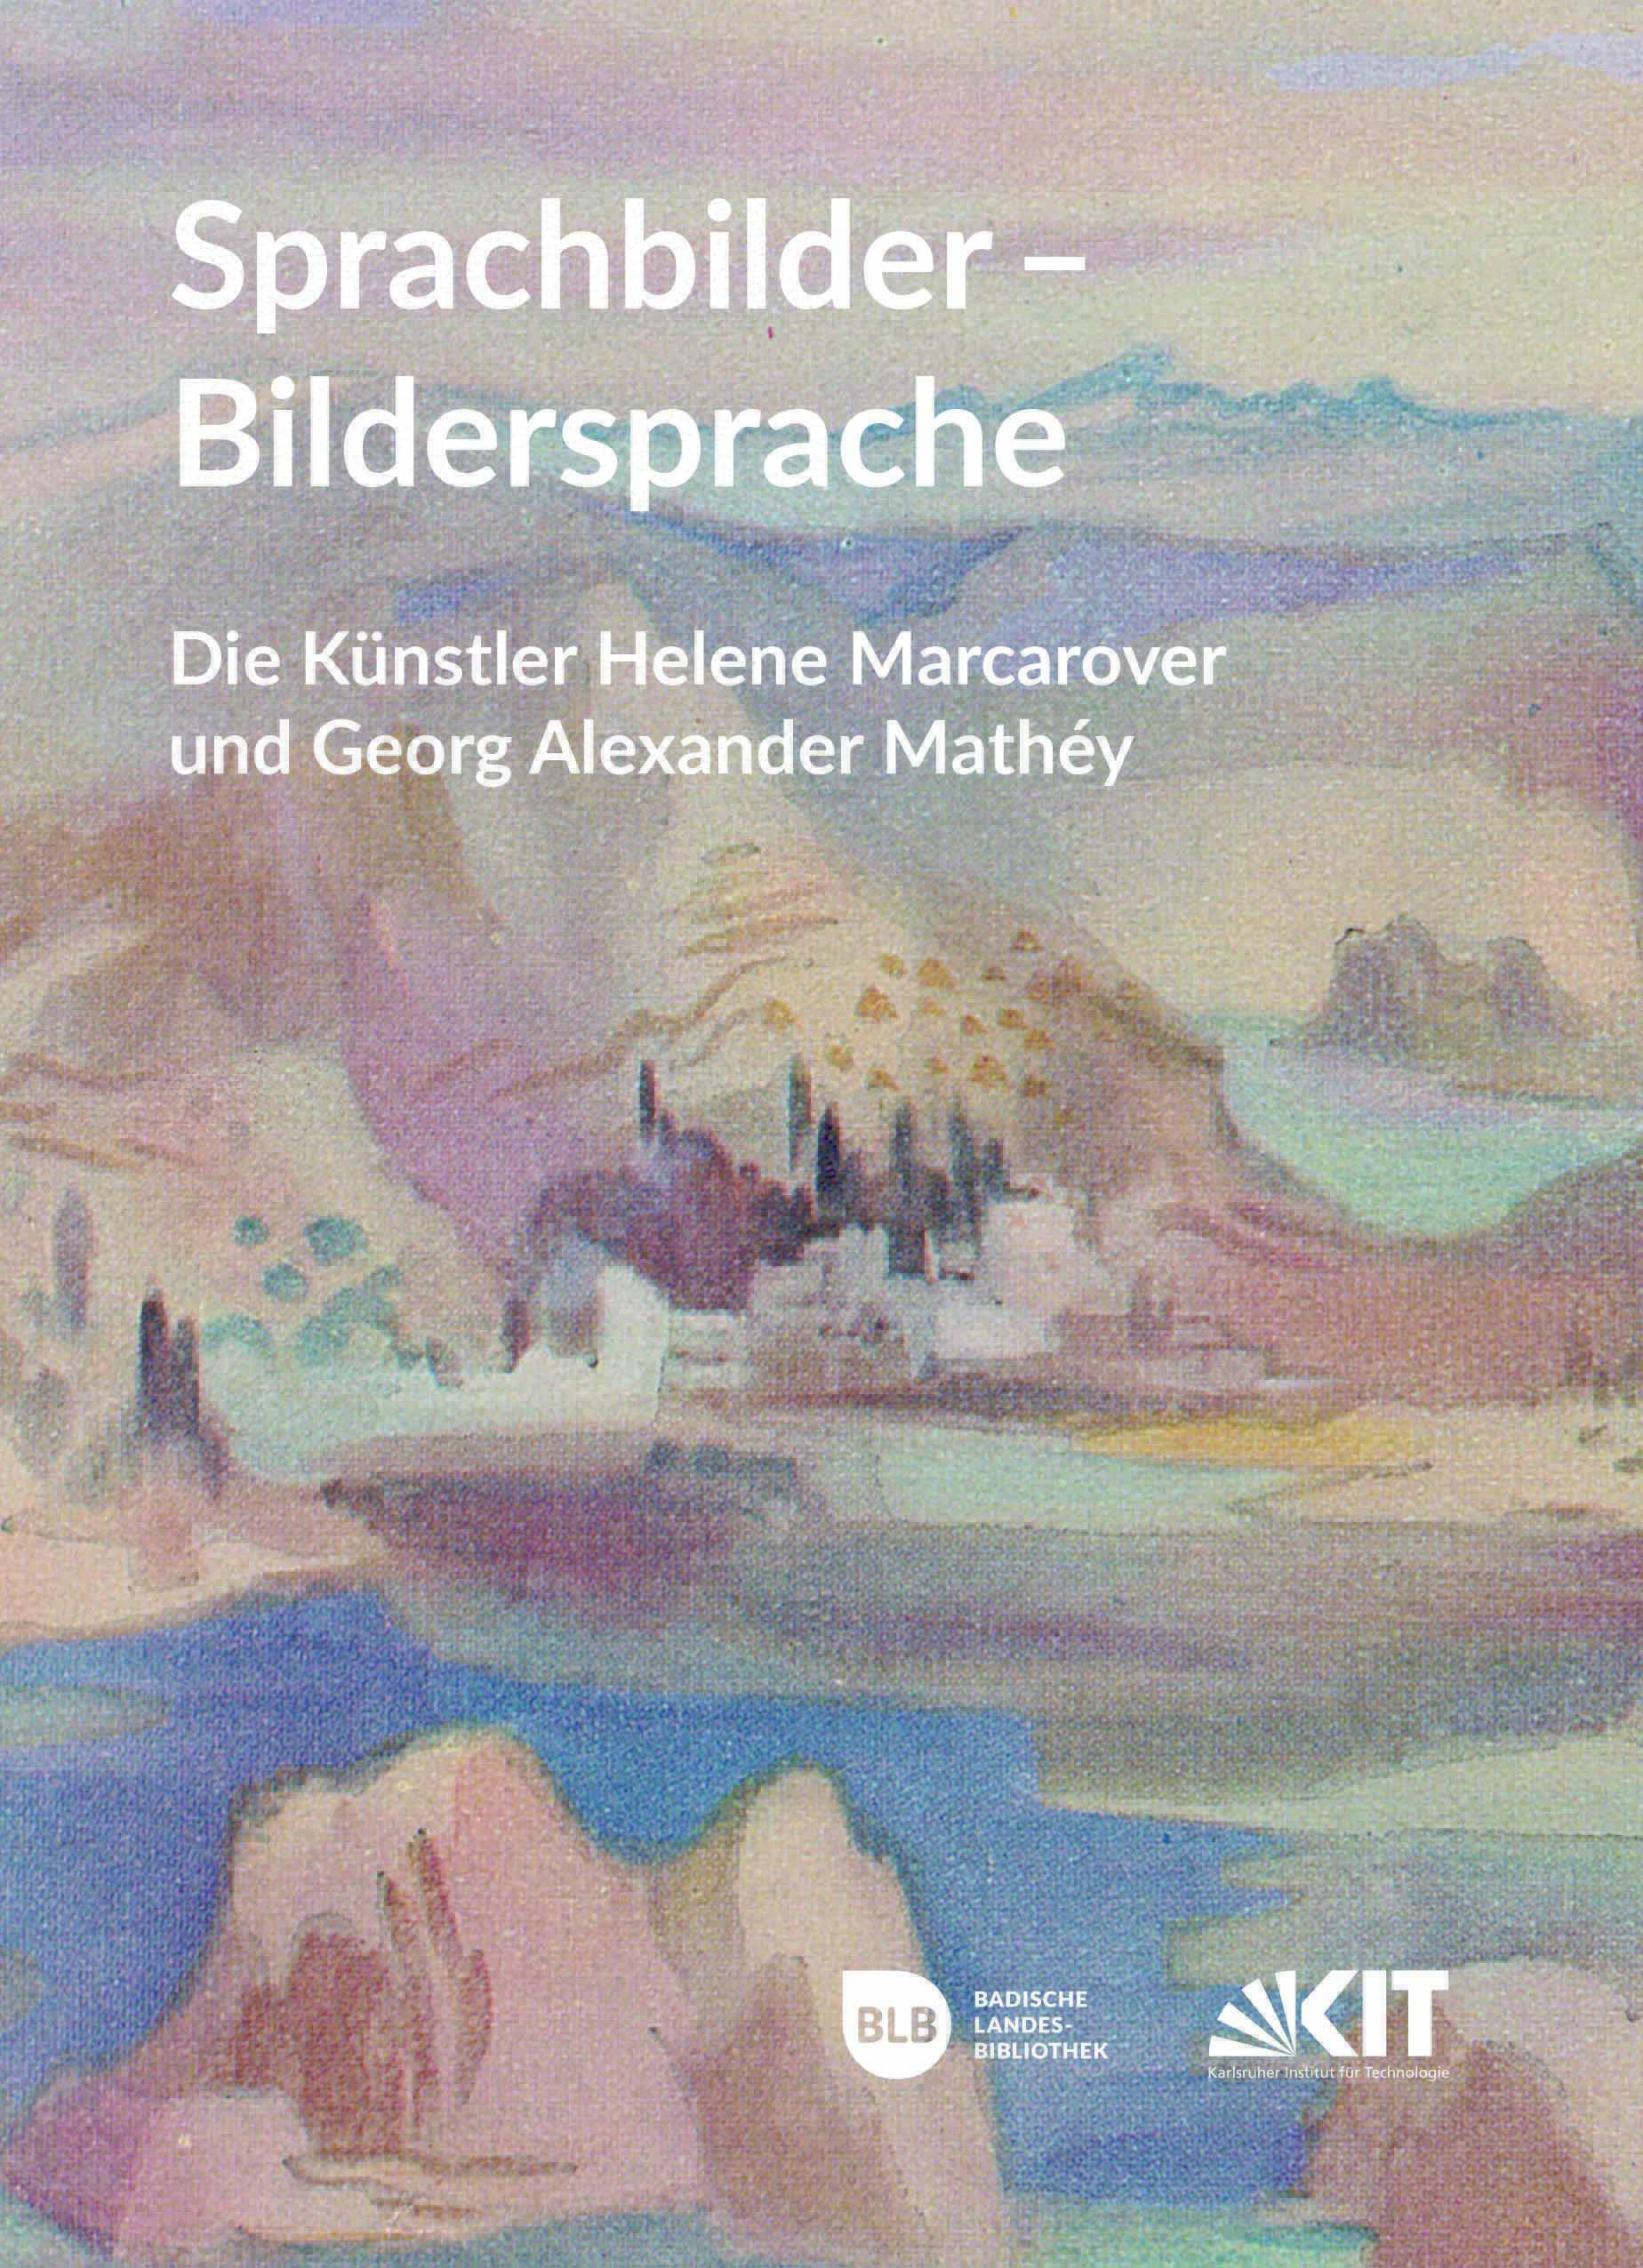 Zu sehen ist das Cover eines Ausstellungskataloges. Der Hintergrund besteht aus einer Malerei von Bergen, einem See und einem Dorf. Im oberen Bereich steht der Titel der Ausstellung. 